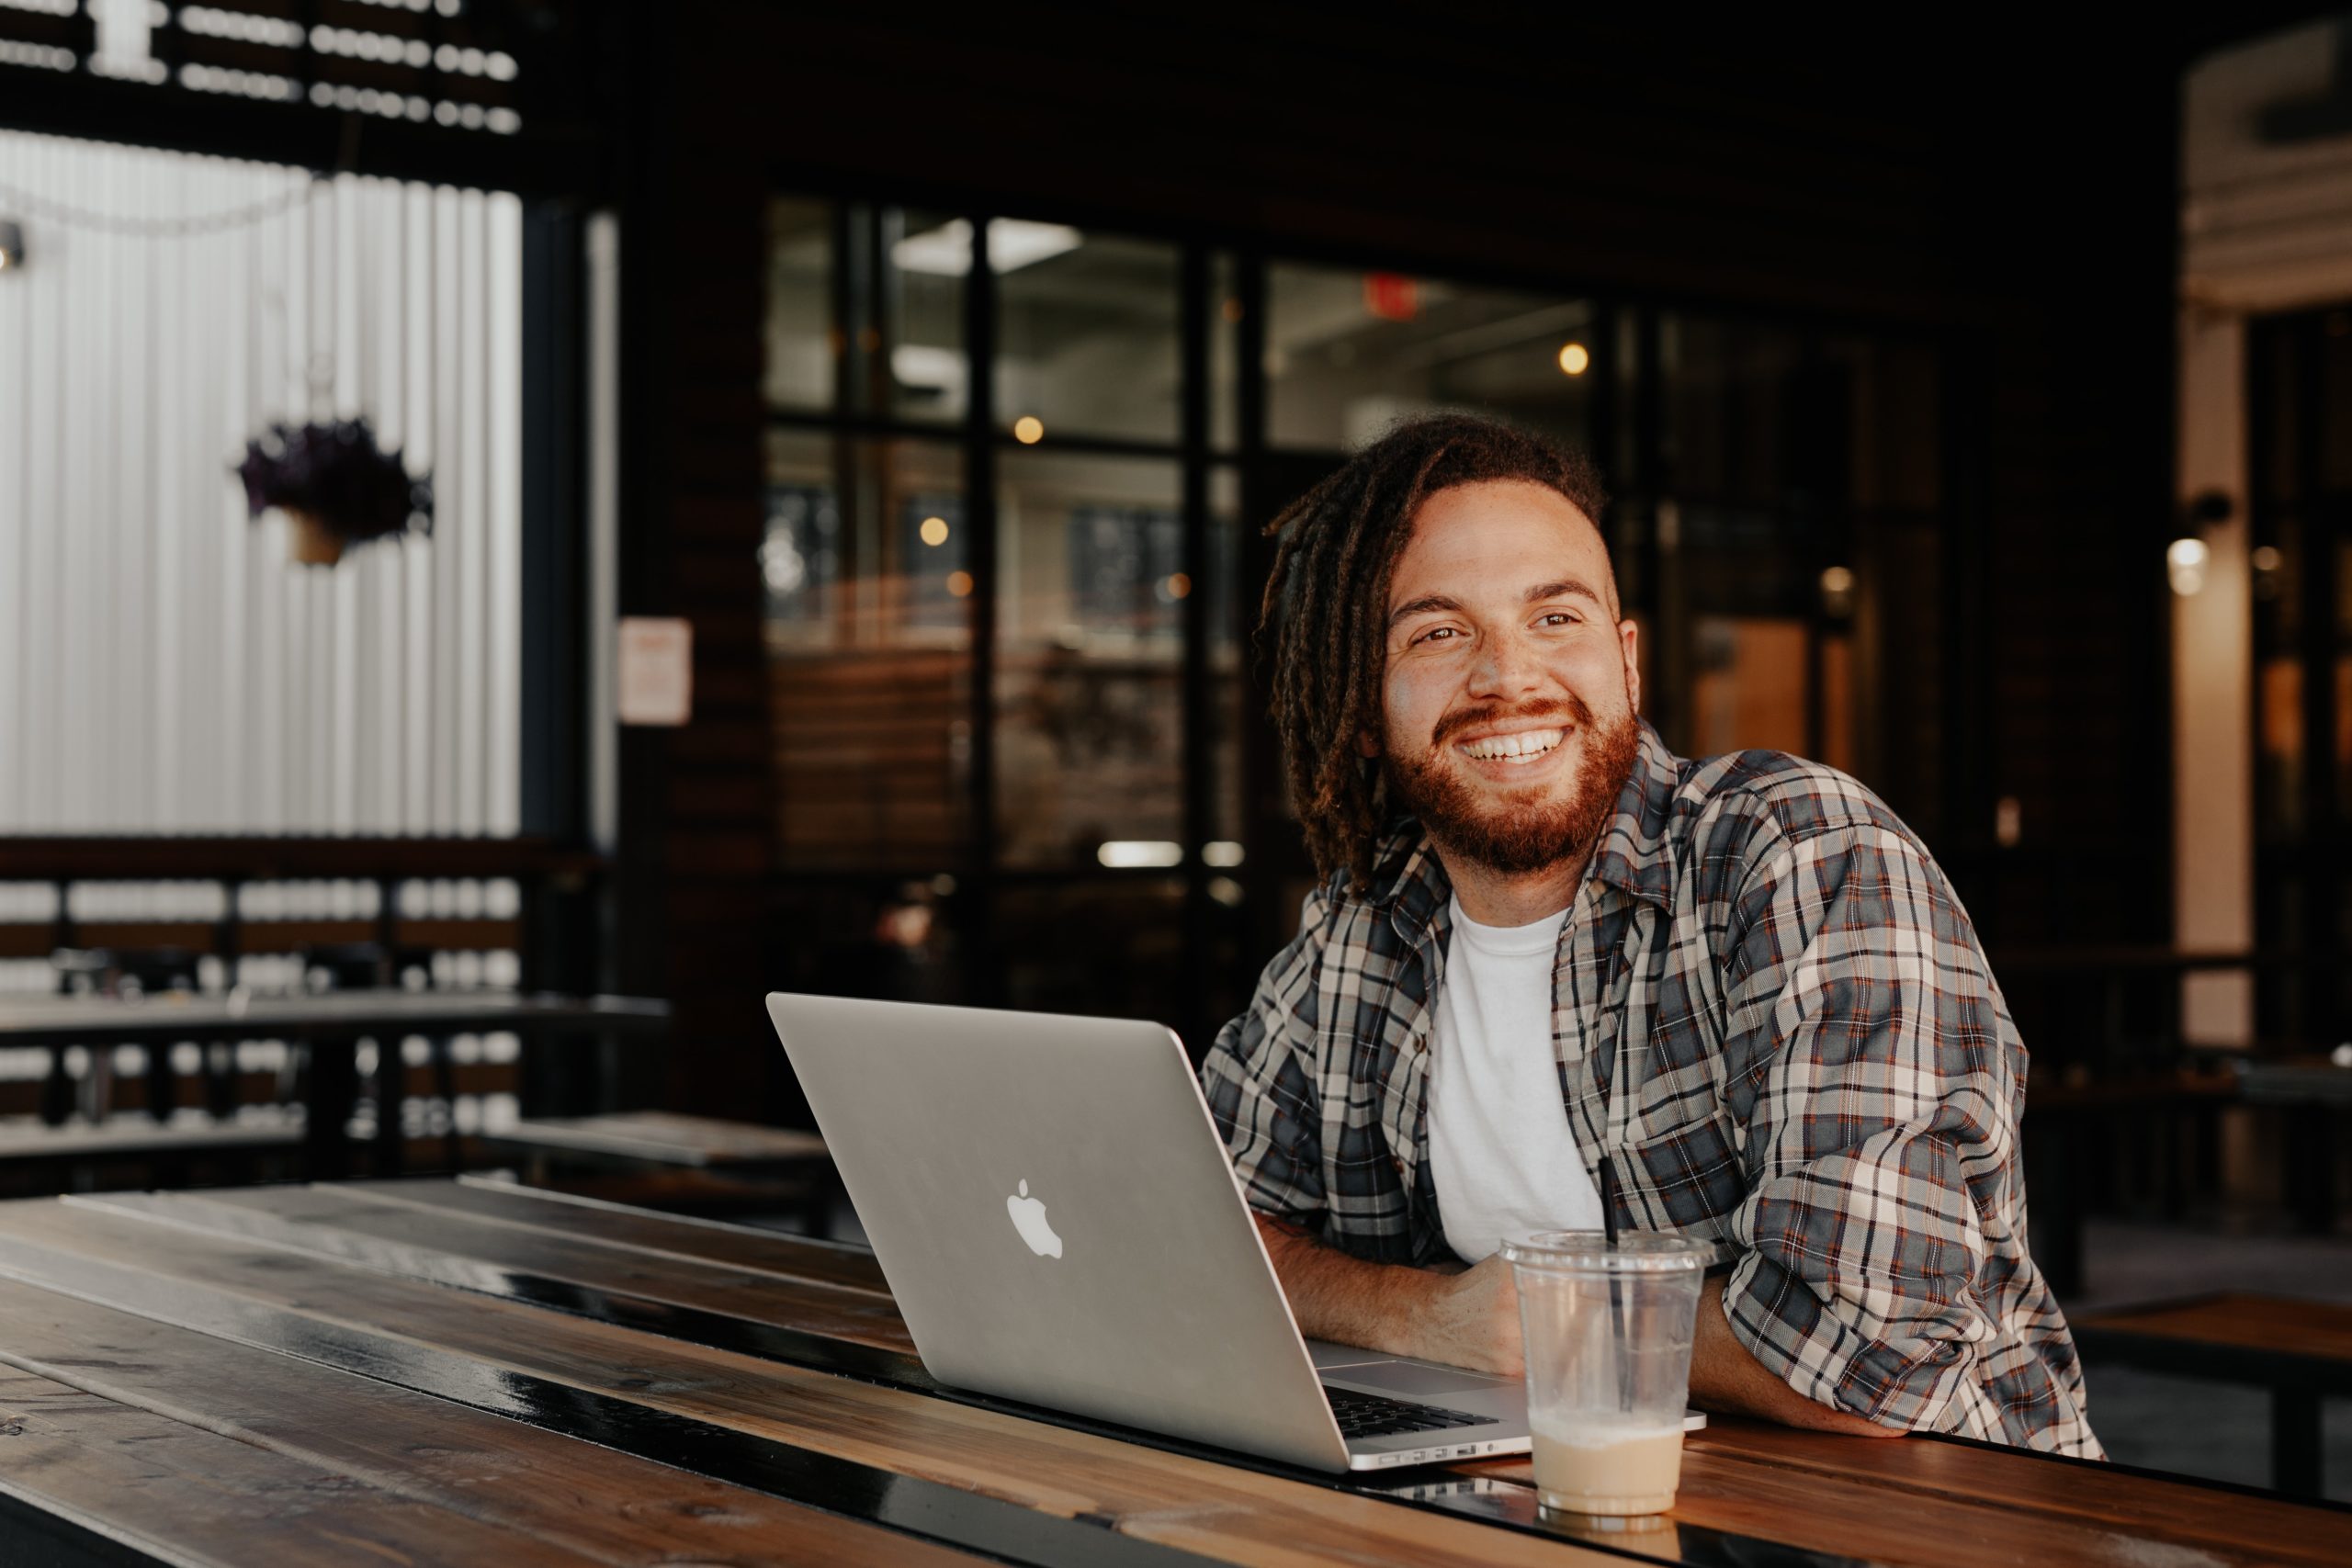 Man smiling while working at his laptop.